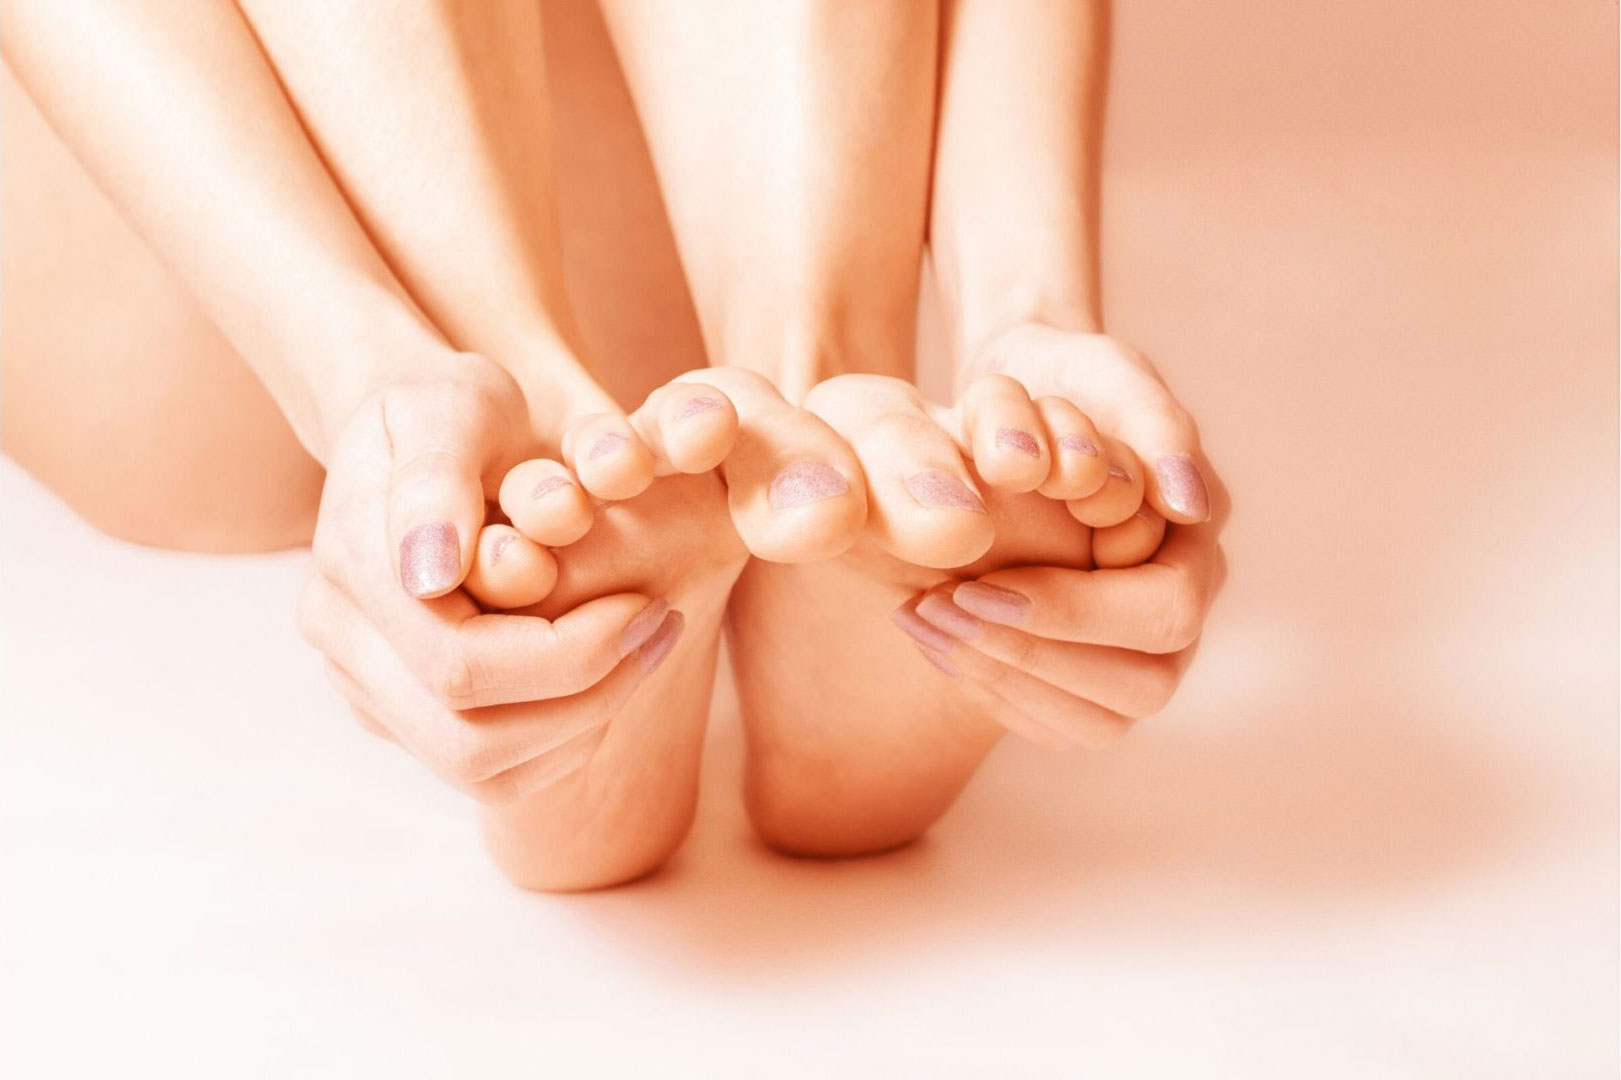 hands touching feet